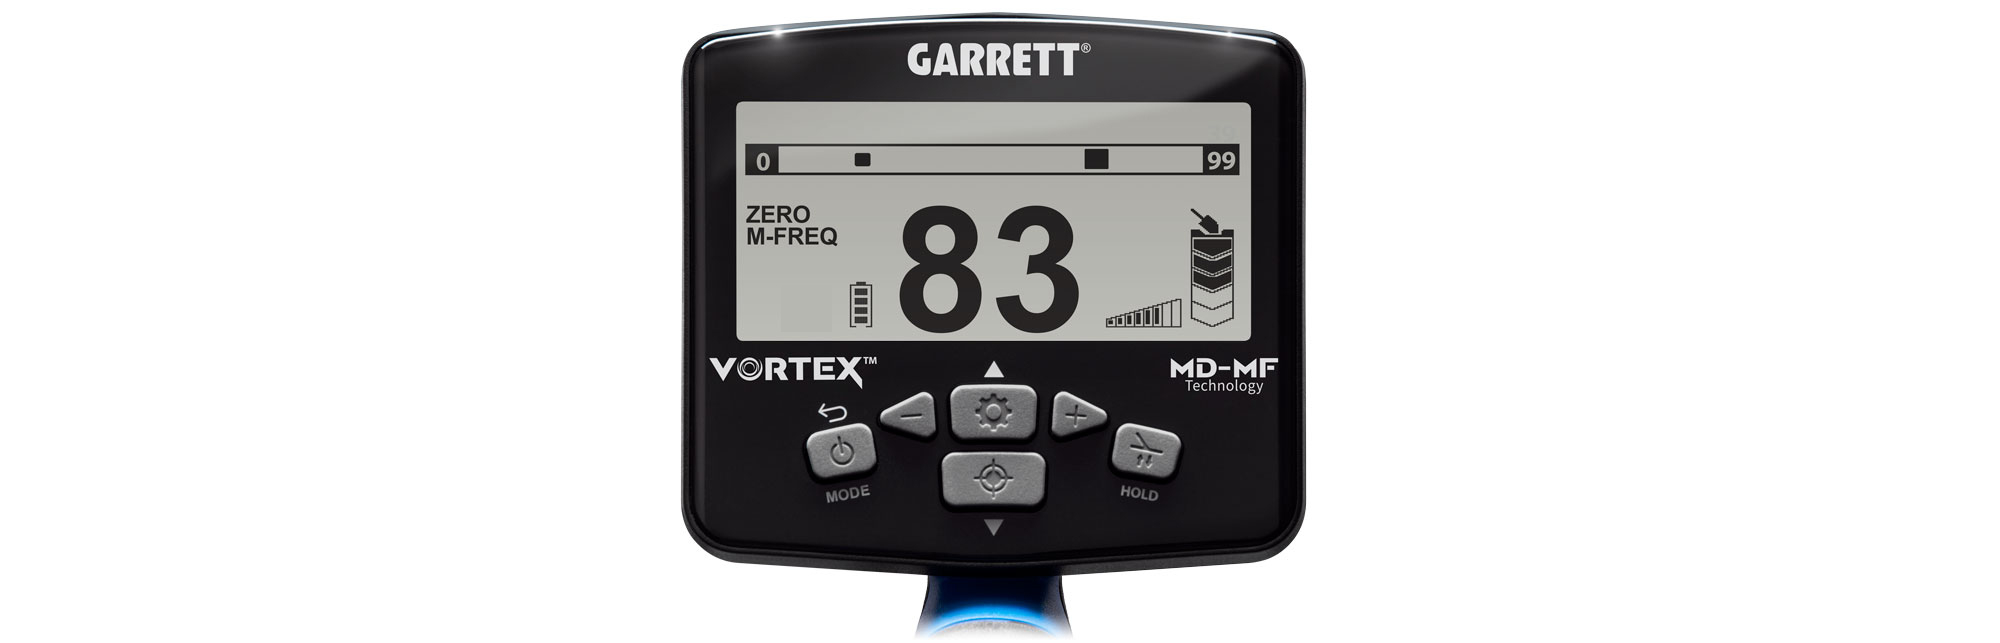 Garrett Vortex VX5 control panel